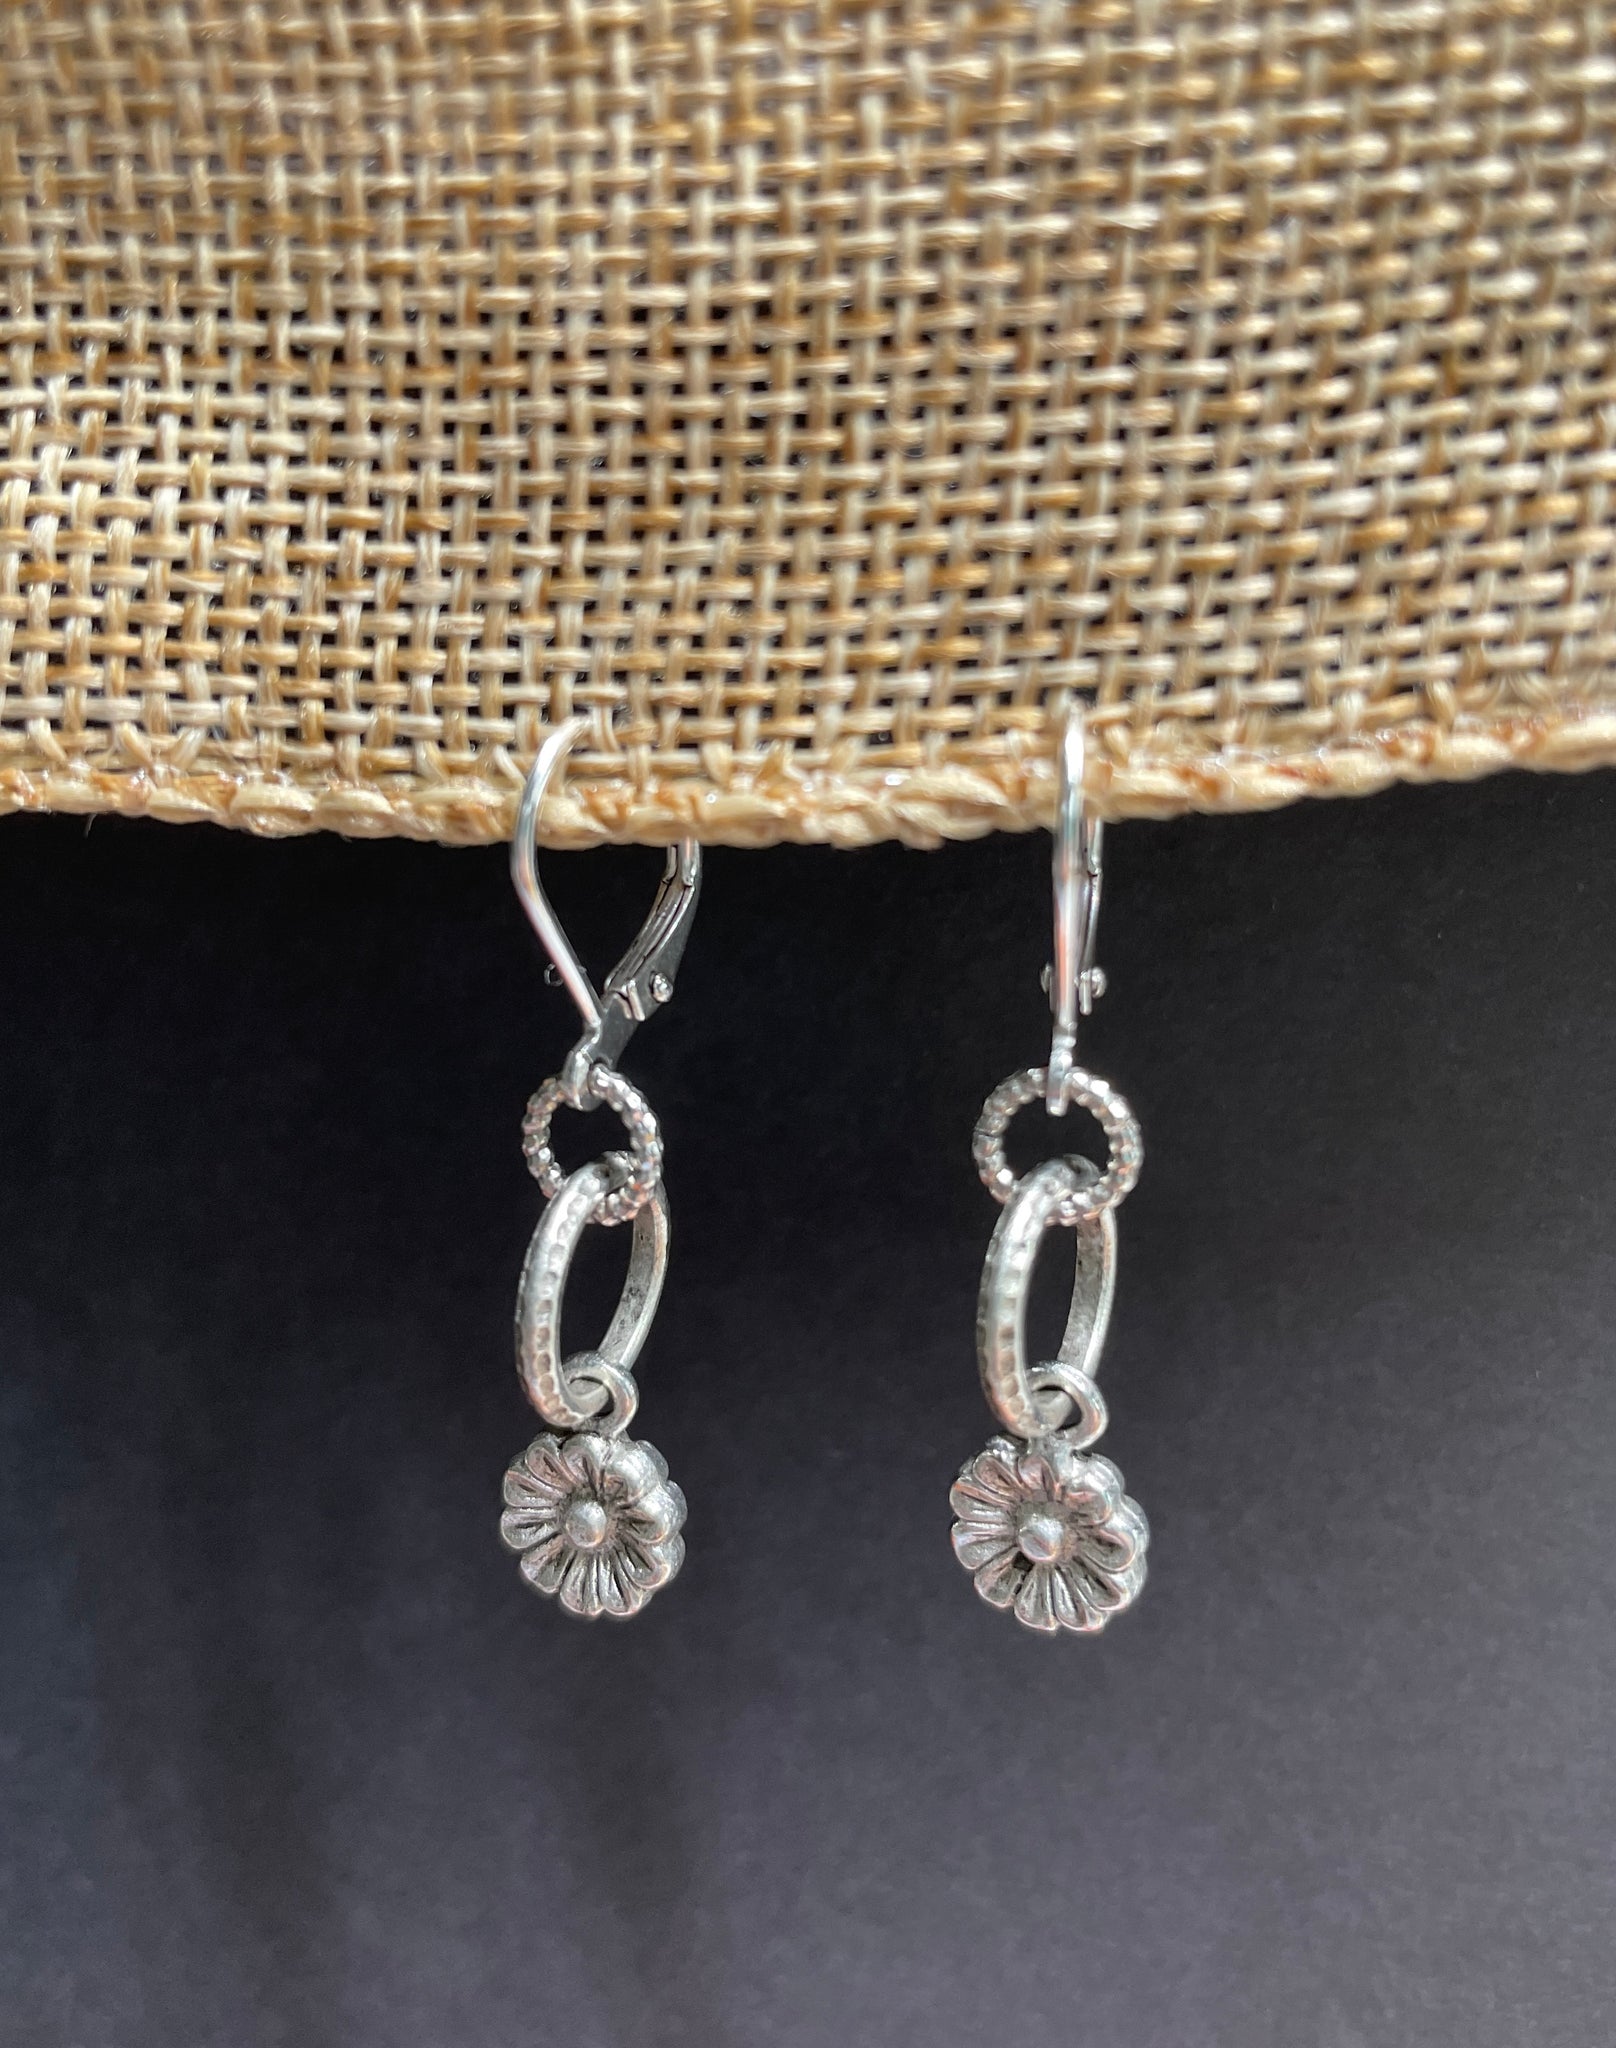 Leverback antique silver flower earrings